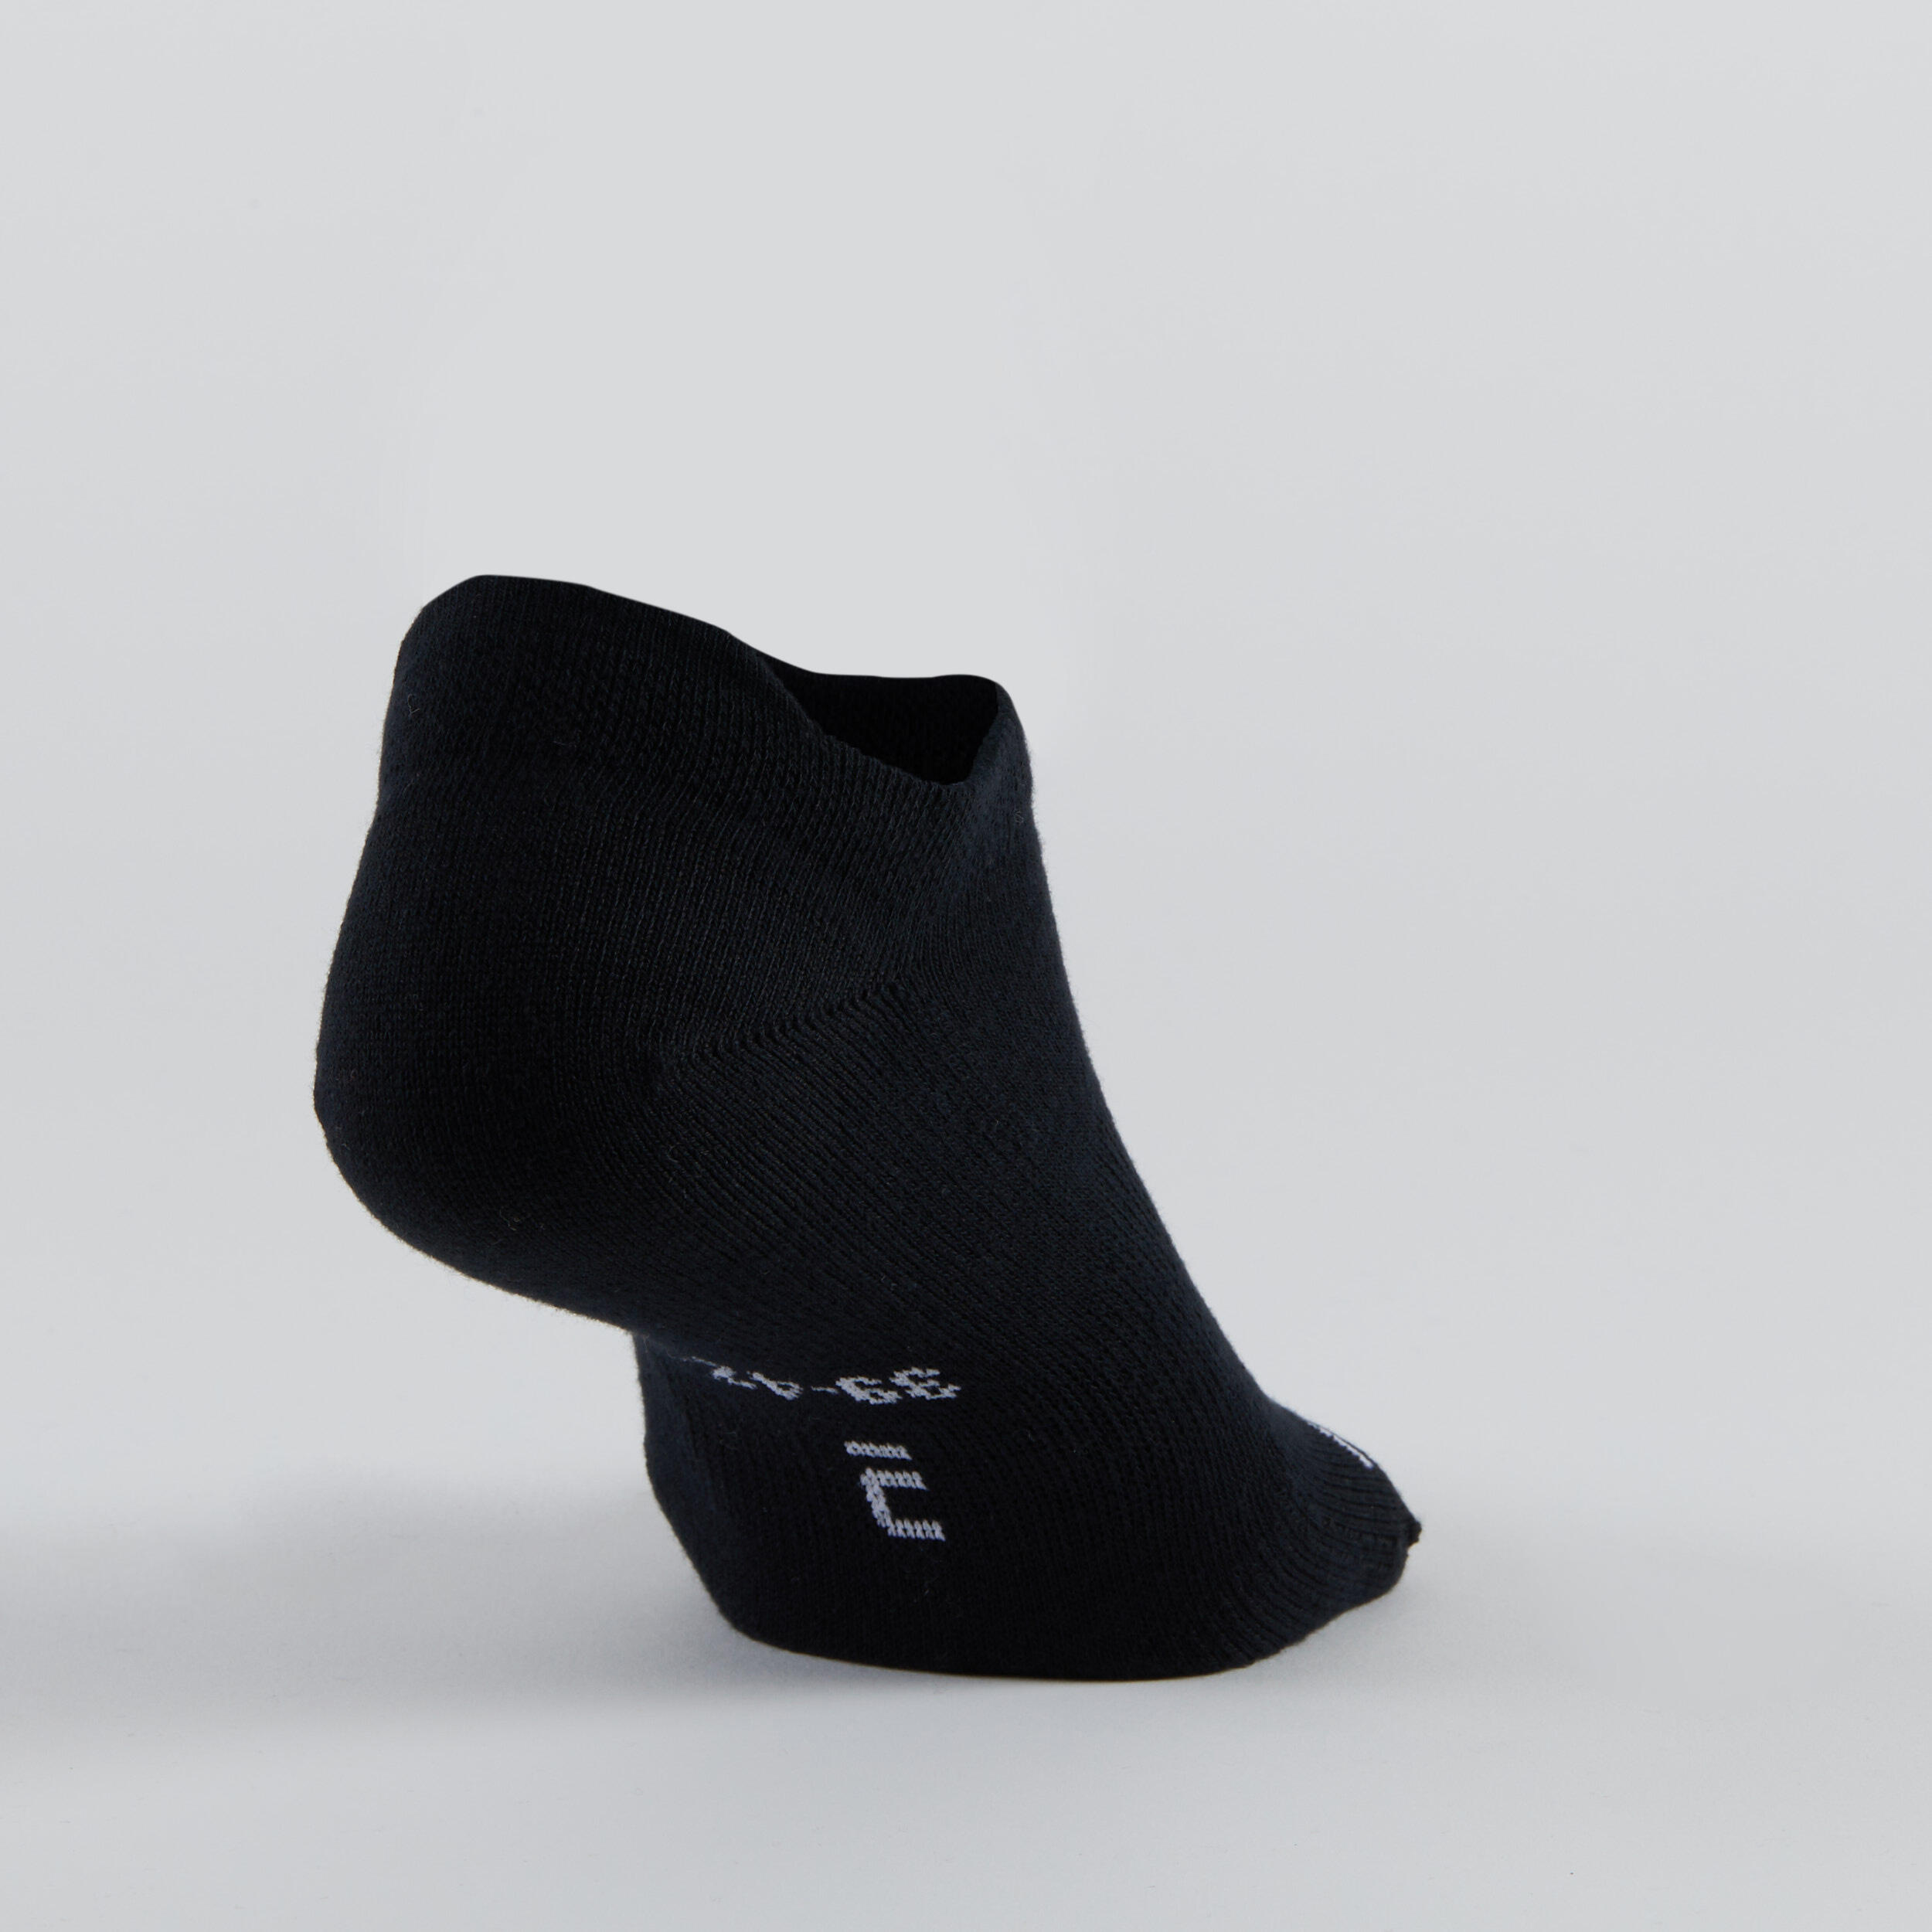 Low Sports Socks Tri-Pack RS 160 - Beige Print/Brown/Black 13/14